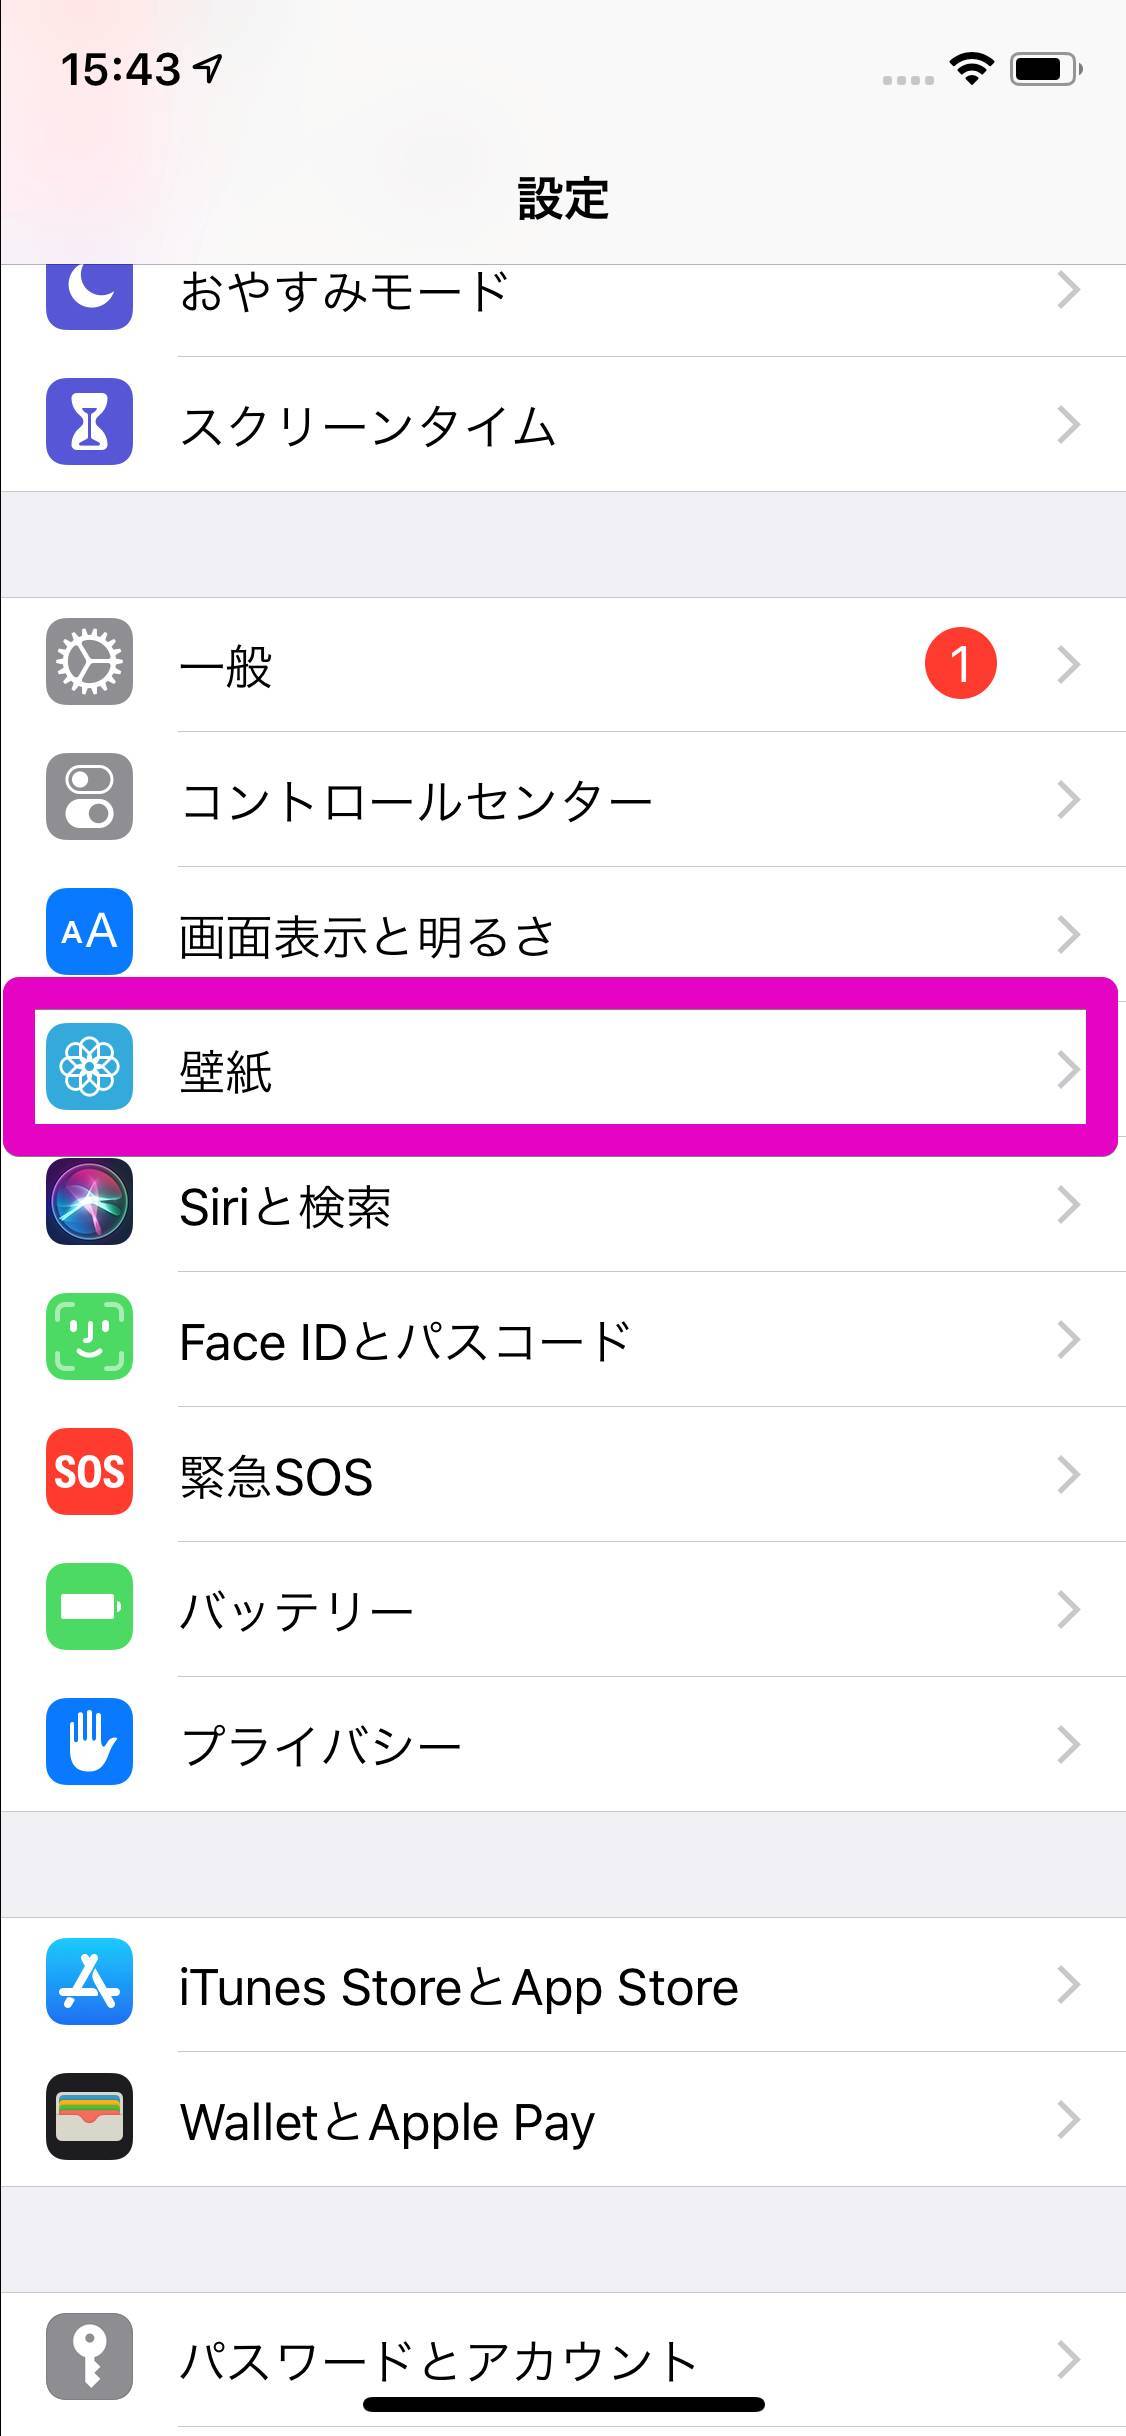 Iphoneのロック画面 ホーム画面の壁紙を変更する方法の画像 2枚目 Appliv Topics